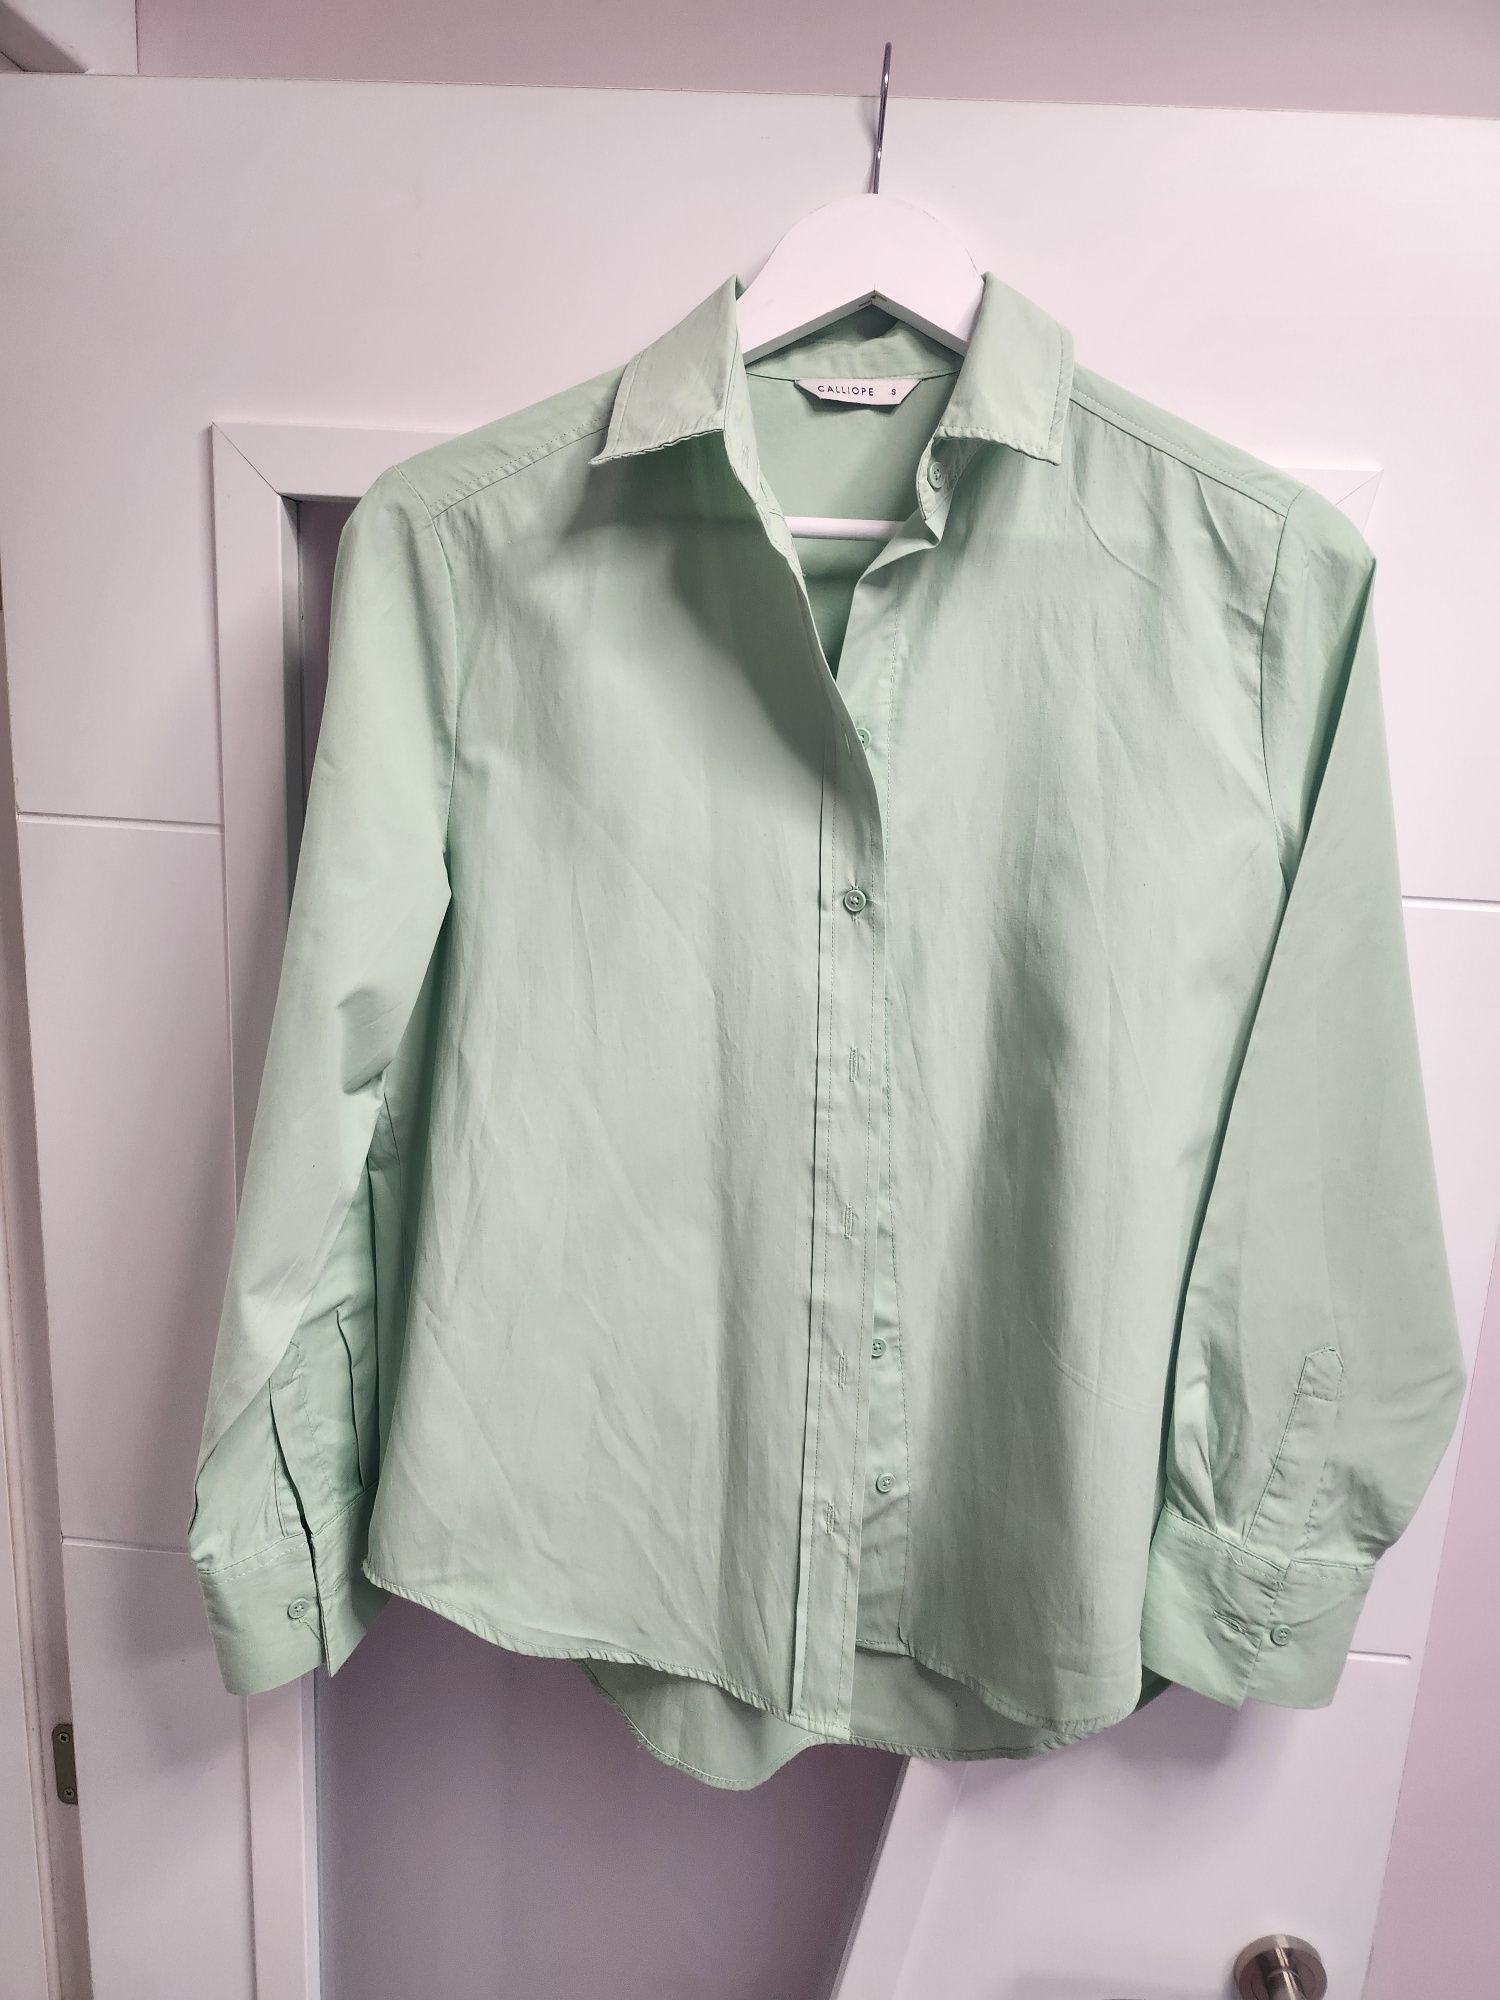 Дамска риза, Calliope, размер S - (синя, зелена)